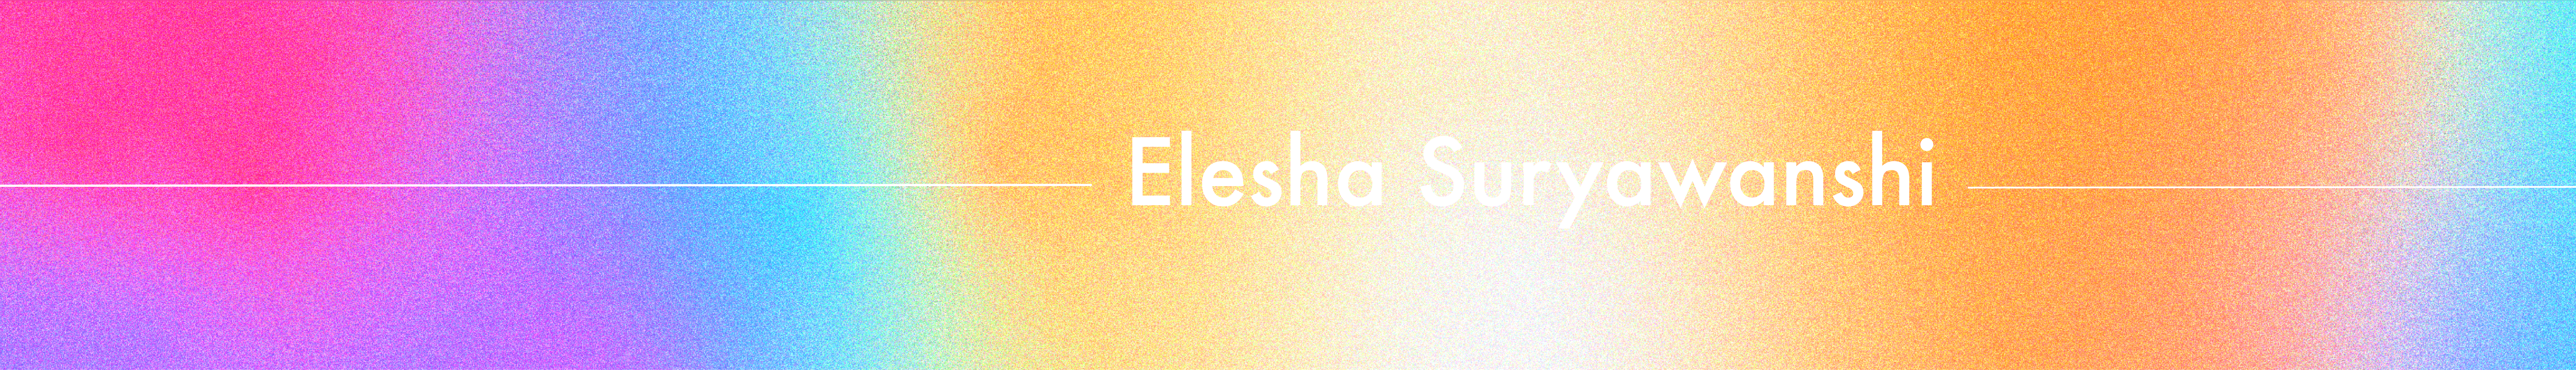 Elesha Suryawanshi's profile banner